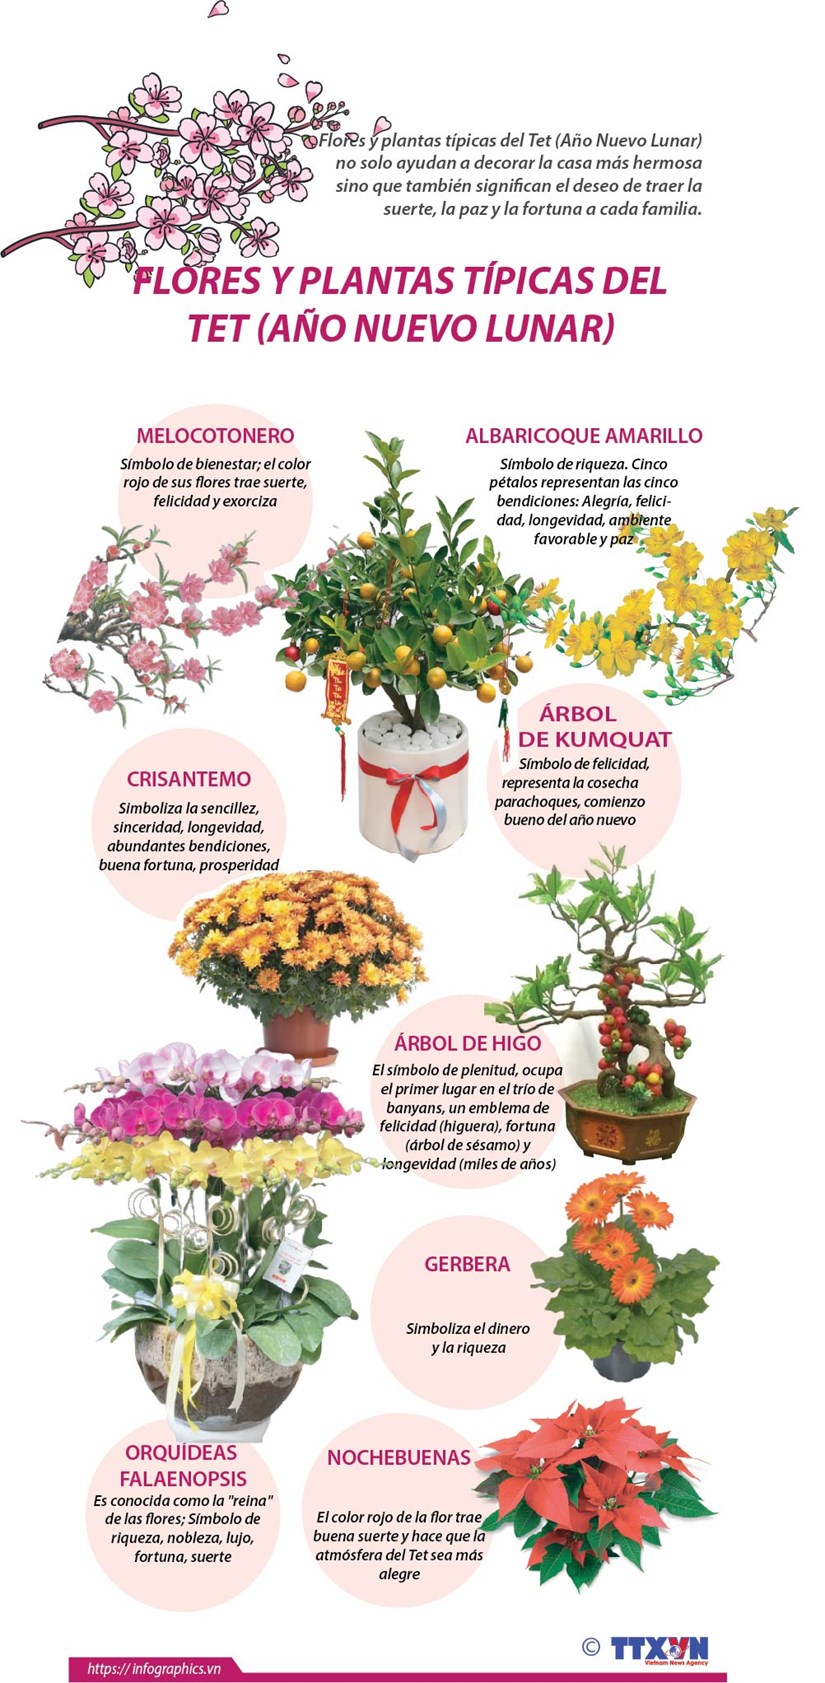 Flores y plantas tipicas del Tet (Ano Nuevo Lunar) hinh anh 1